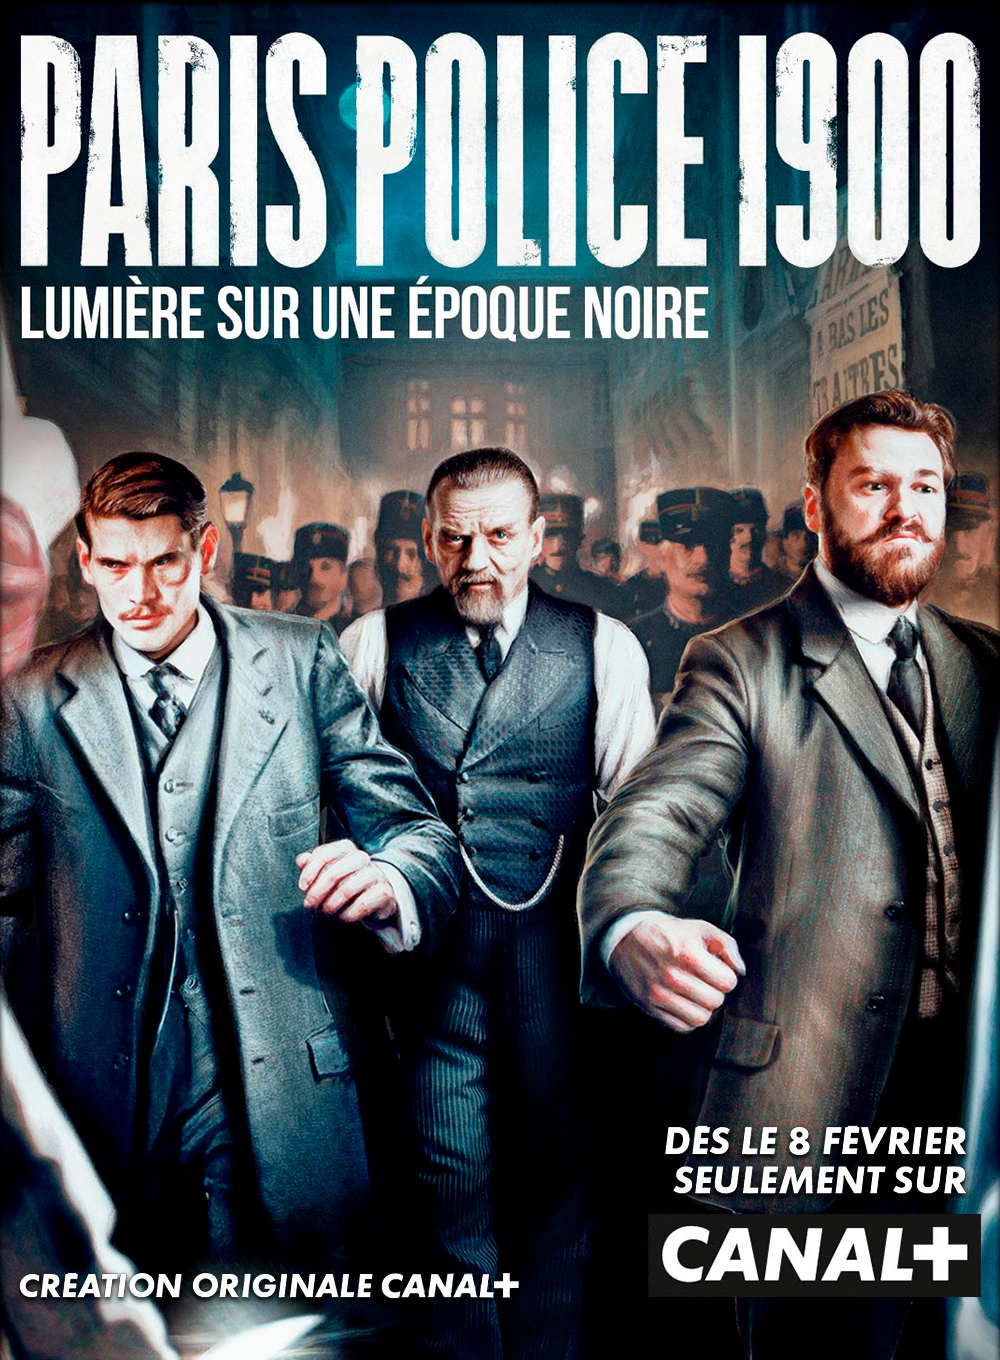 Paris Police 1900 - Série (2021)